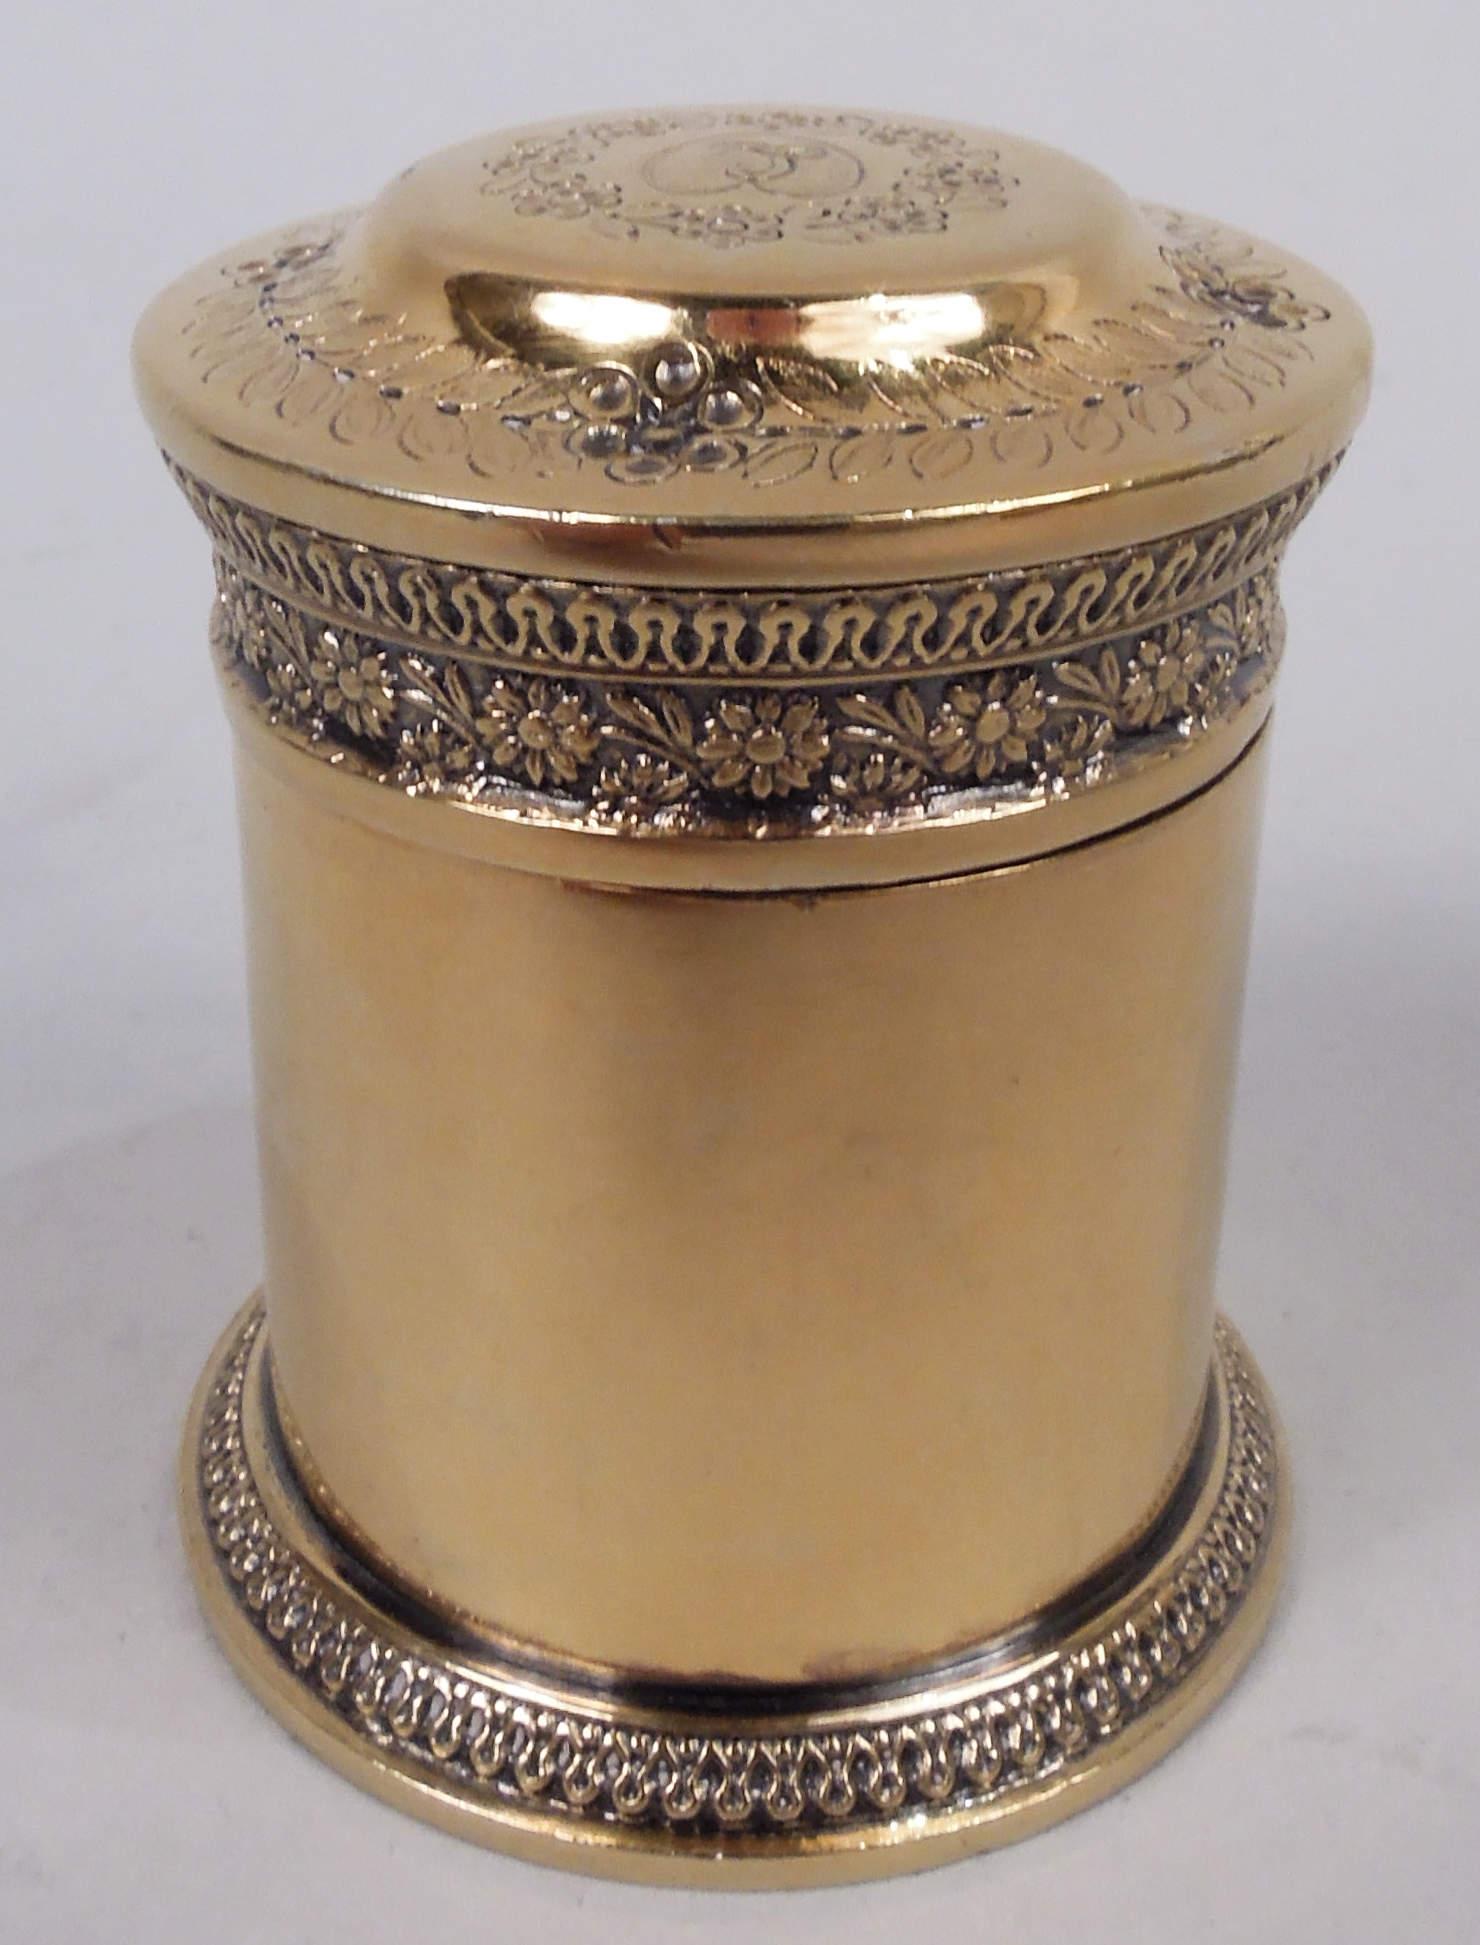  Restauration Boîte classique en argent doré. Fabriqué par Jean-Baptiste Claude Odiot à Paris, vers 1820. Forme de tambour à base étalée ; couvercle surélevé. Jantes en forme d'œuf et de fléchettes en fonte et à motifs floraux. Coeur gravé d'un